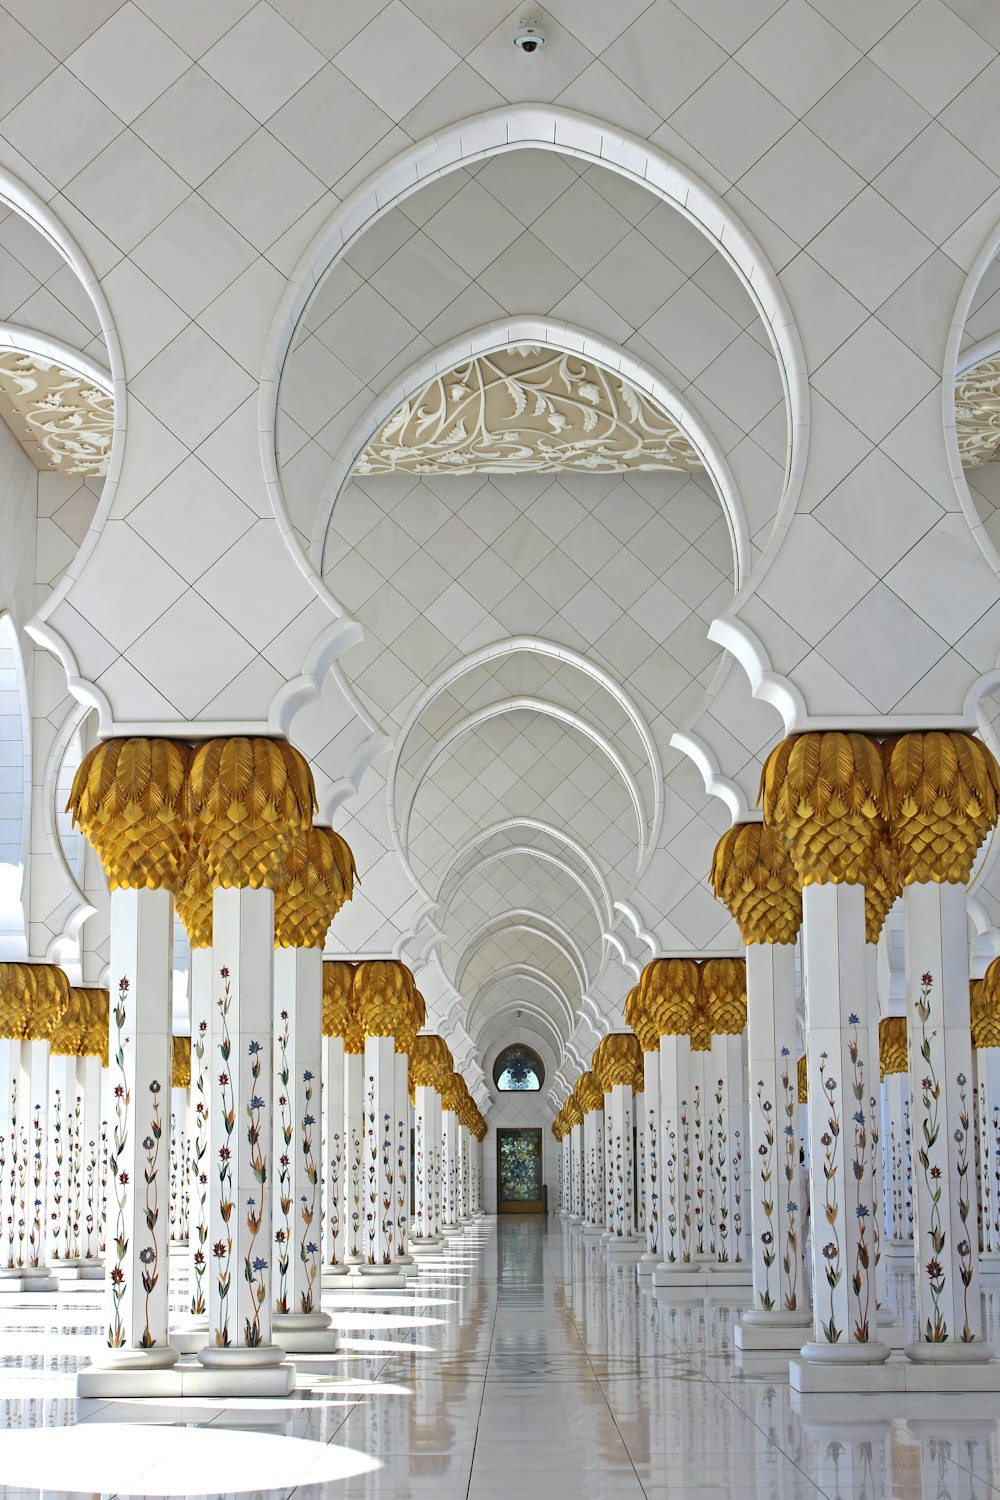 ザイード・シェイク・モスク(サウジアラビア、昼間)